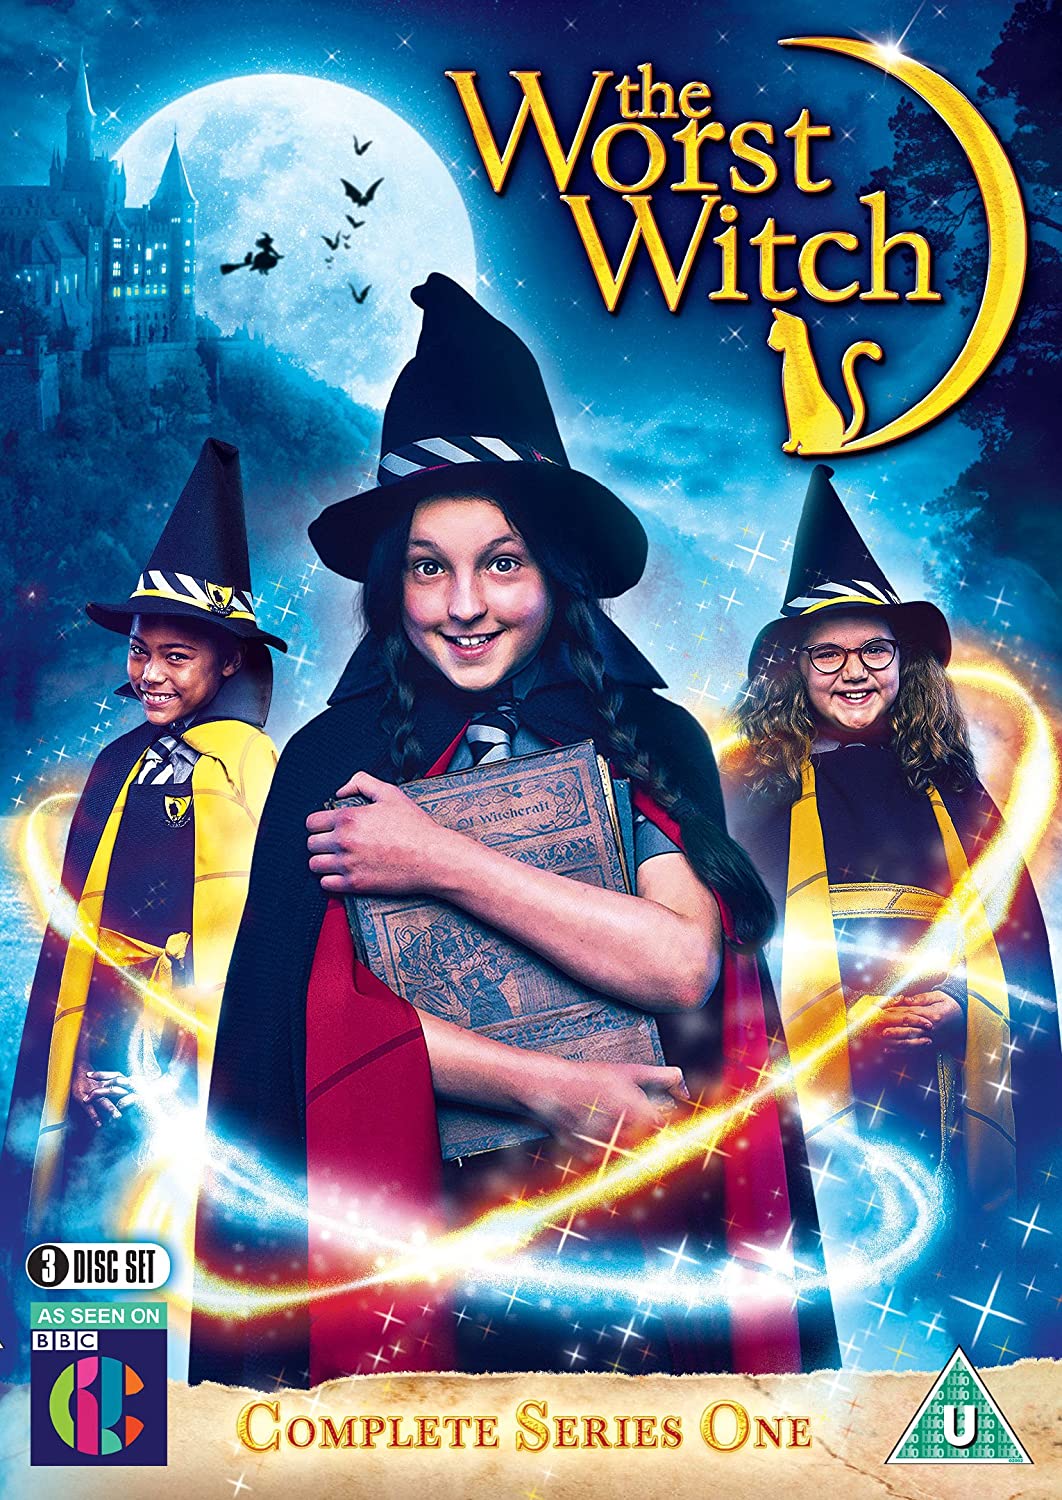 ดูหนังออนไลน์ฟรี The Worst Witch Season 3 (2019) โอมเพี้ยง! แม่มดน้อยสู้ตาย ซีซั่น 3 ตอนที่ 7